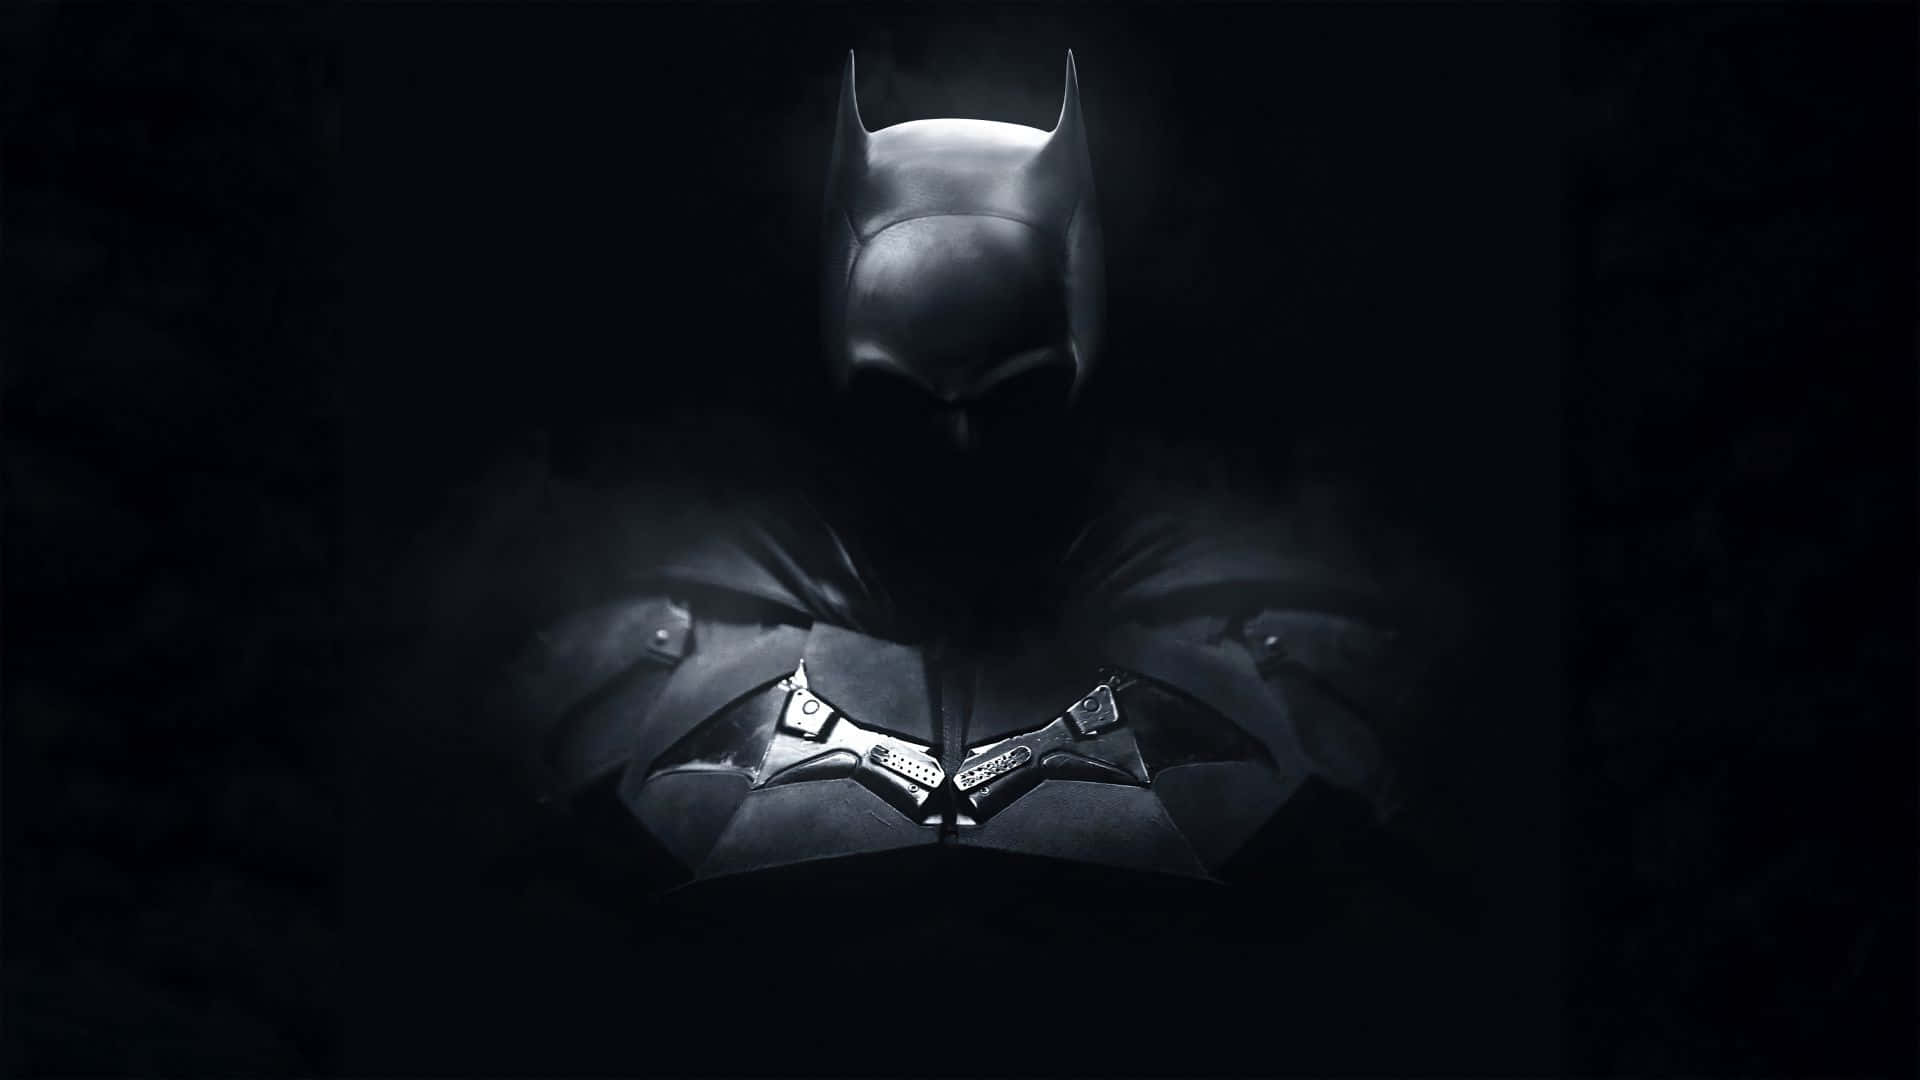 Dark Knight Emerging From Shadows.jpg Wallpaper